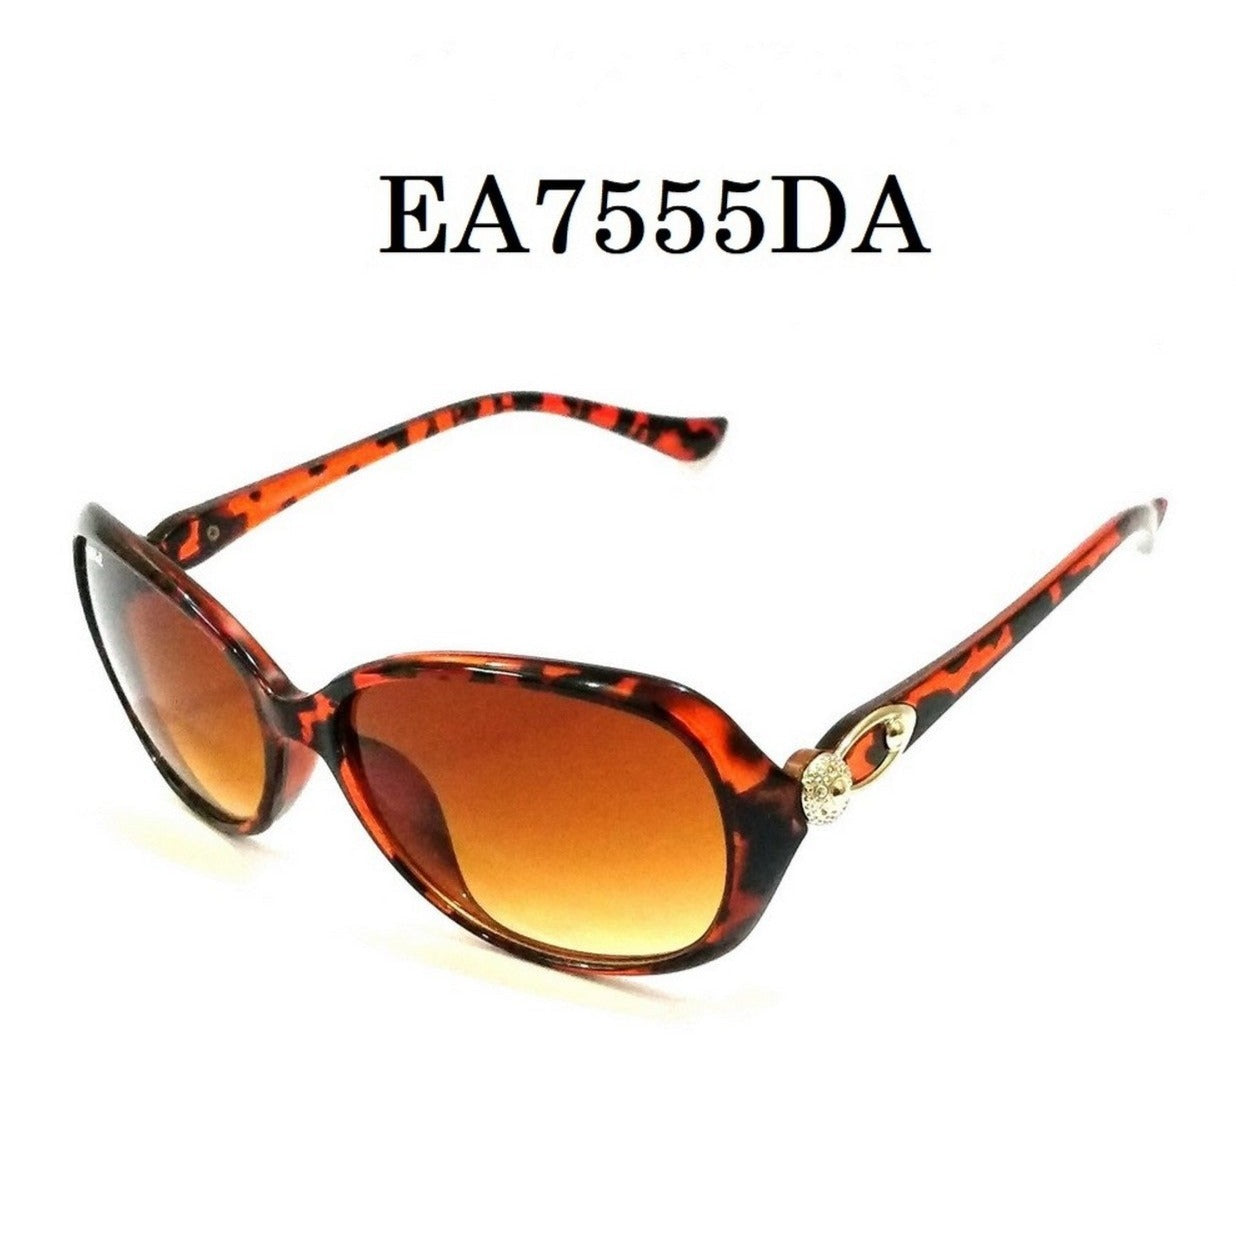 Leopard DA Color Sunglasses for Women EA7555DA - Glasses India Online